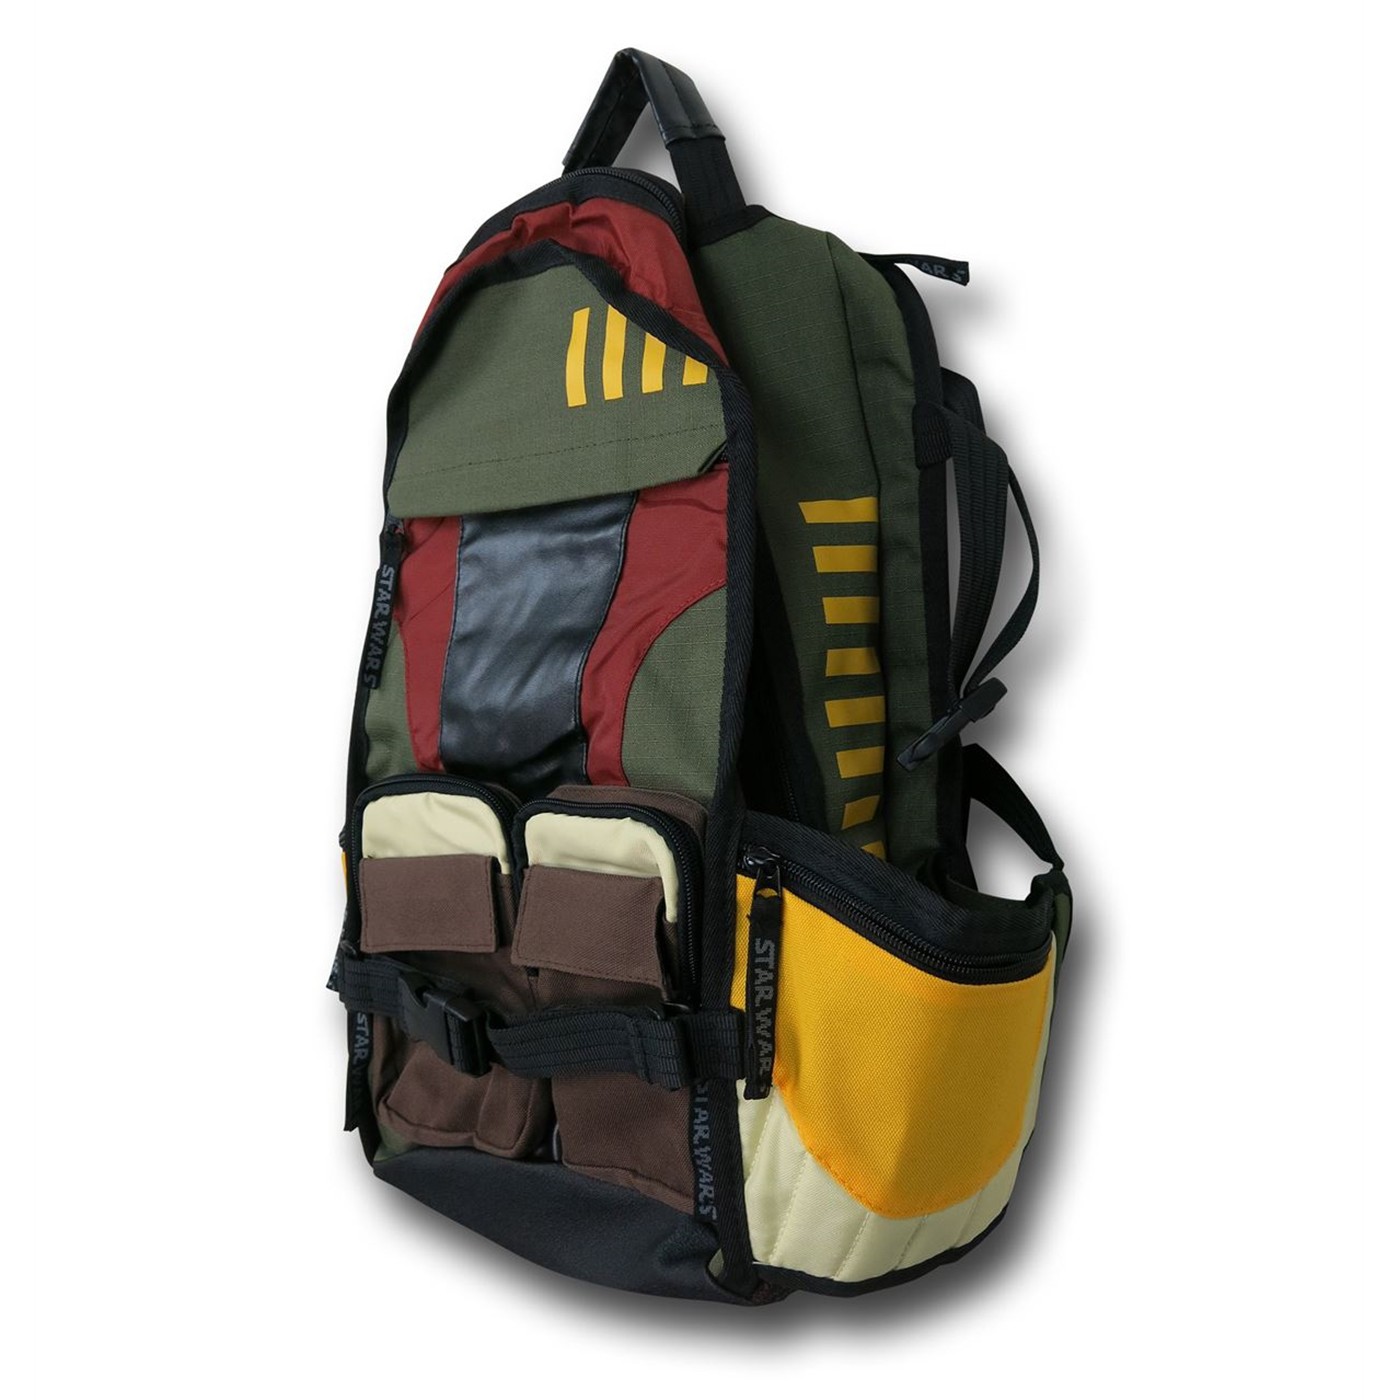 Star Wars Boba Fett Themed Backpack